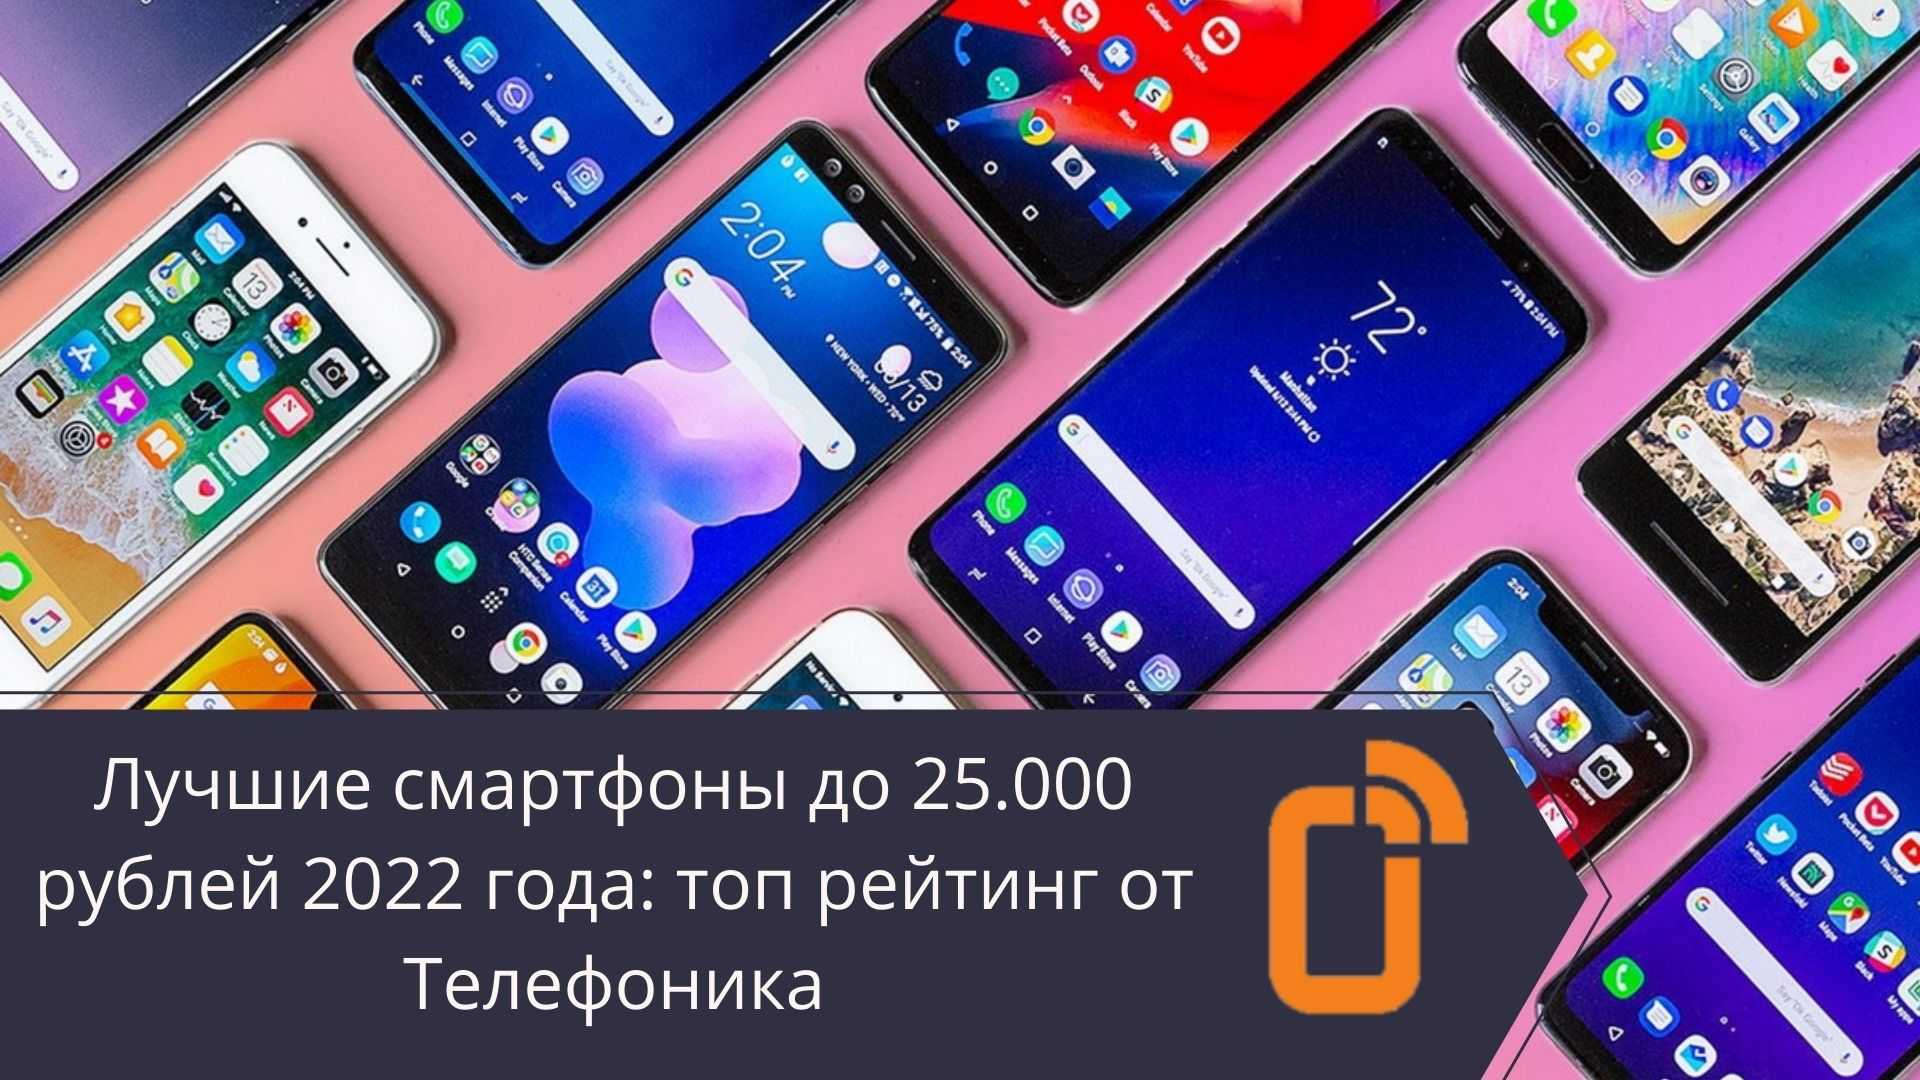 Топ-13 лучших смартфонов до 25000 рублей: рейтинг + советы по выбору